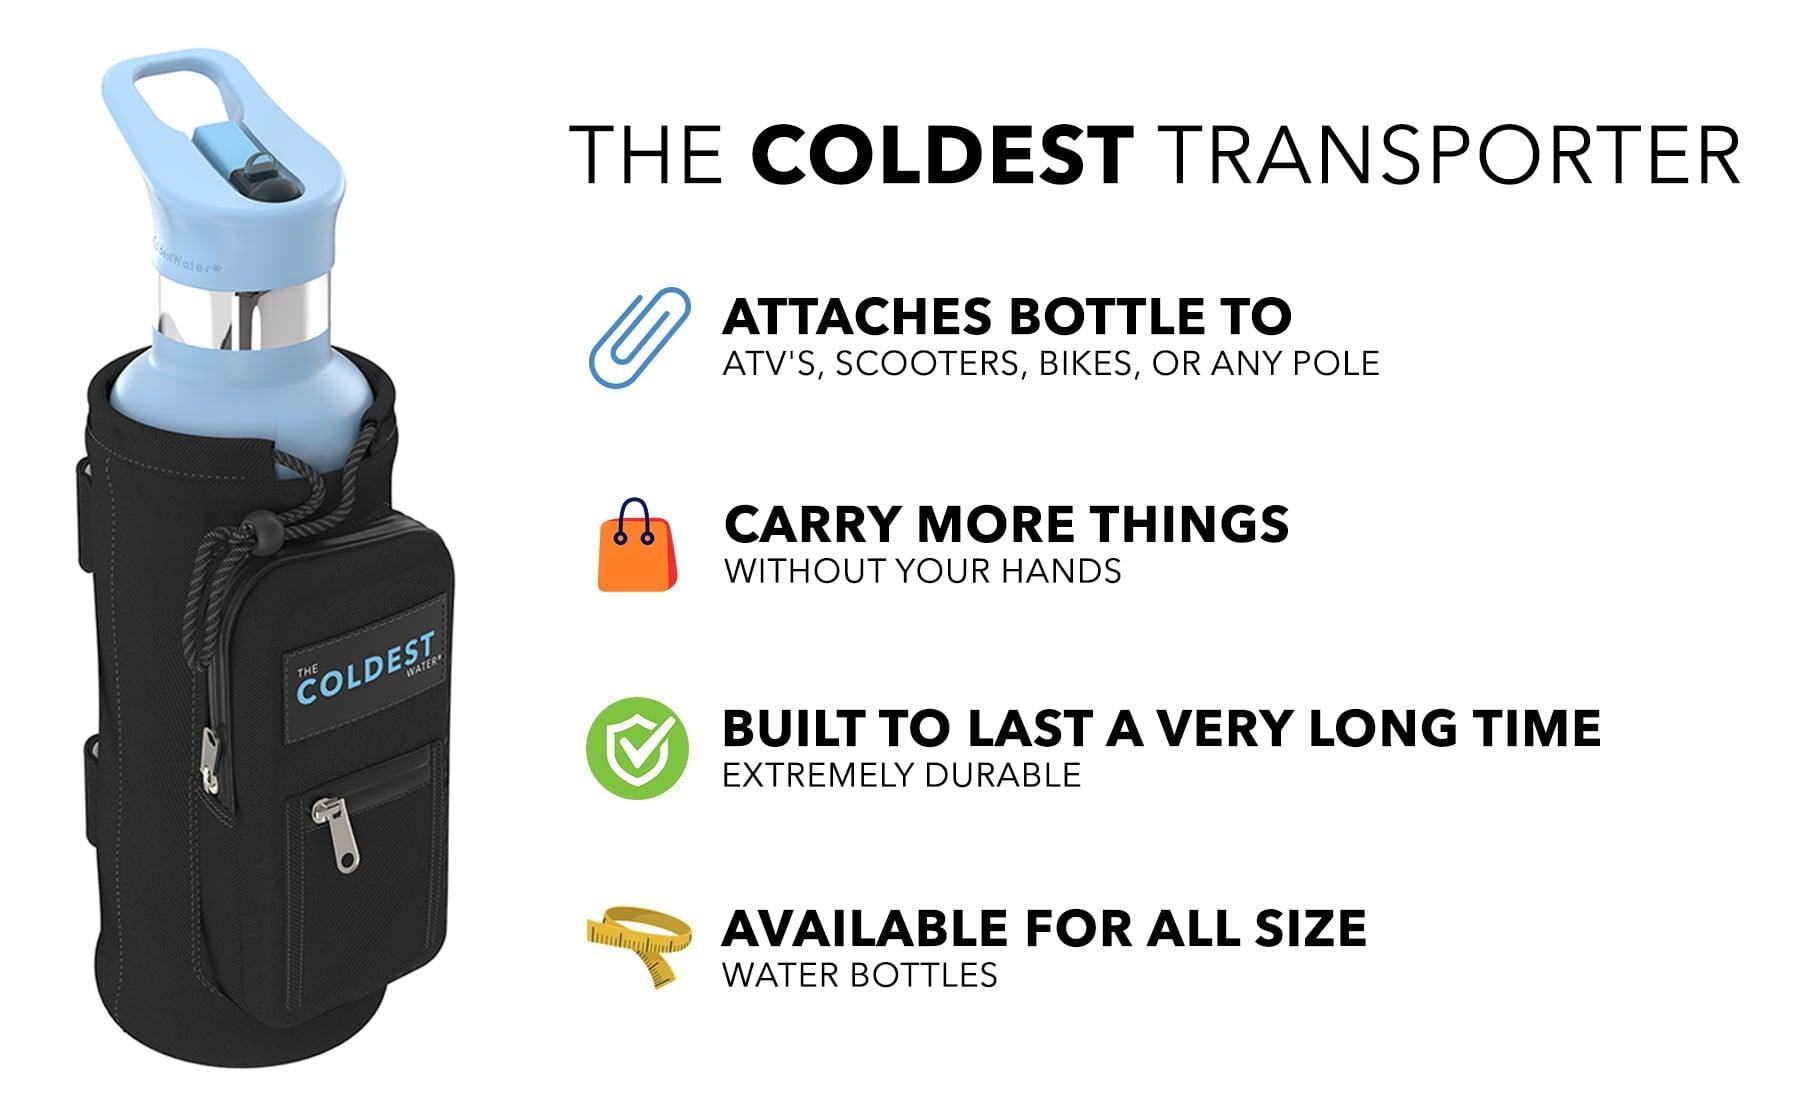 The Transporter - Bottle Cup Holder - Coldest Half Gallon